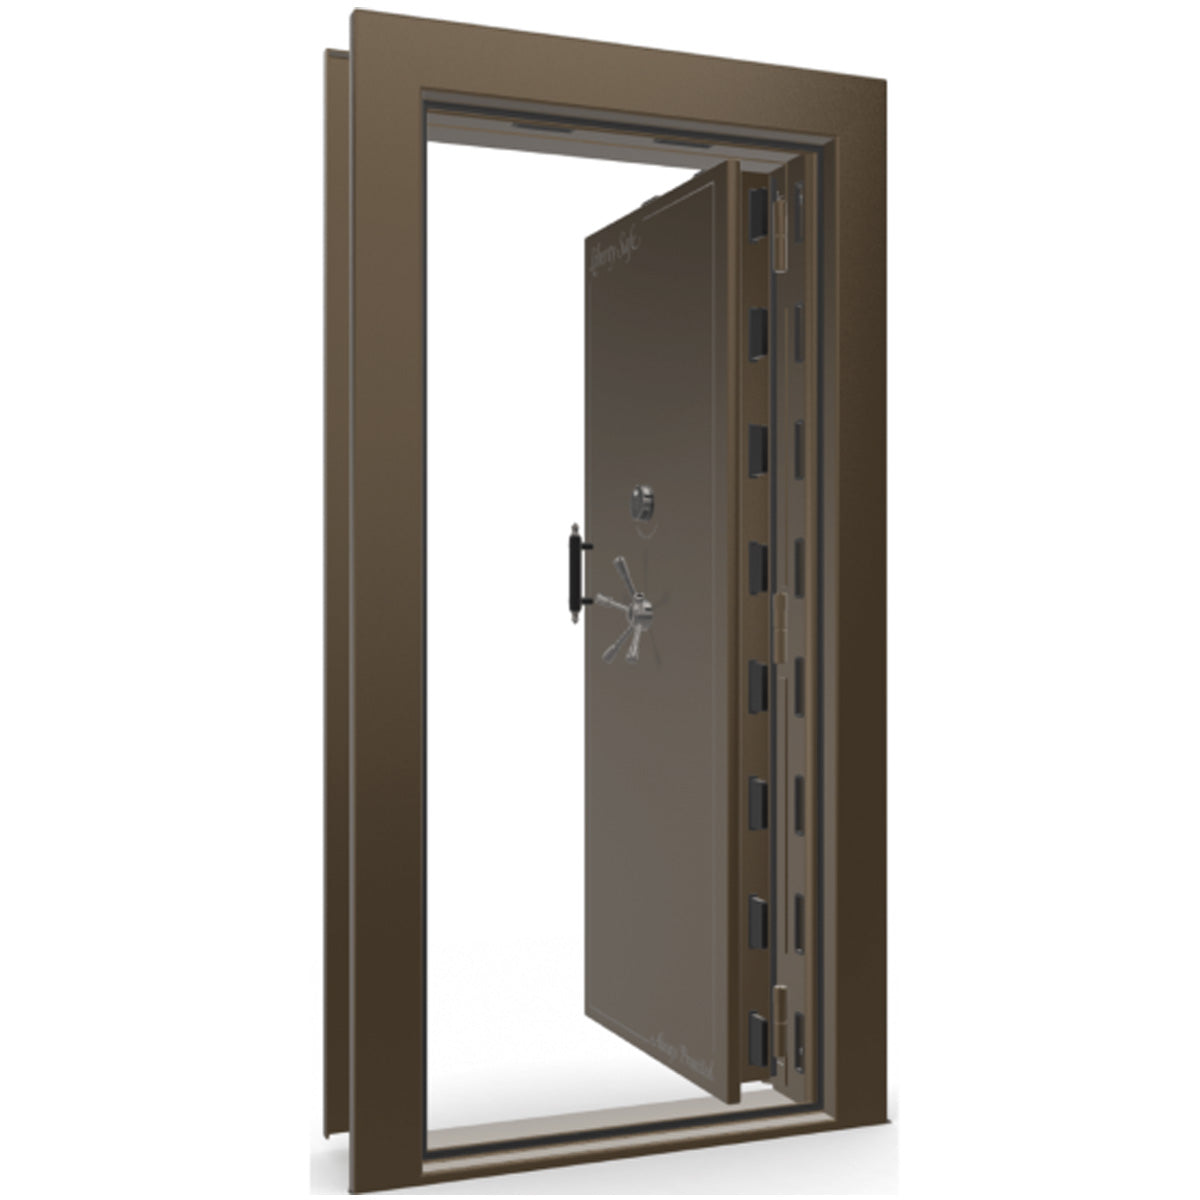 The Beast Vault Door in Bronze Gloss with Black Chrome Electronic Lock, Right Inswing, door open.